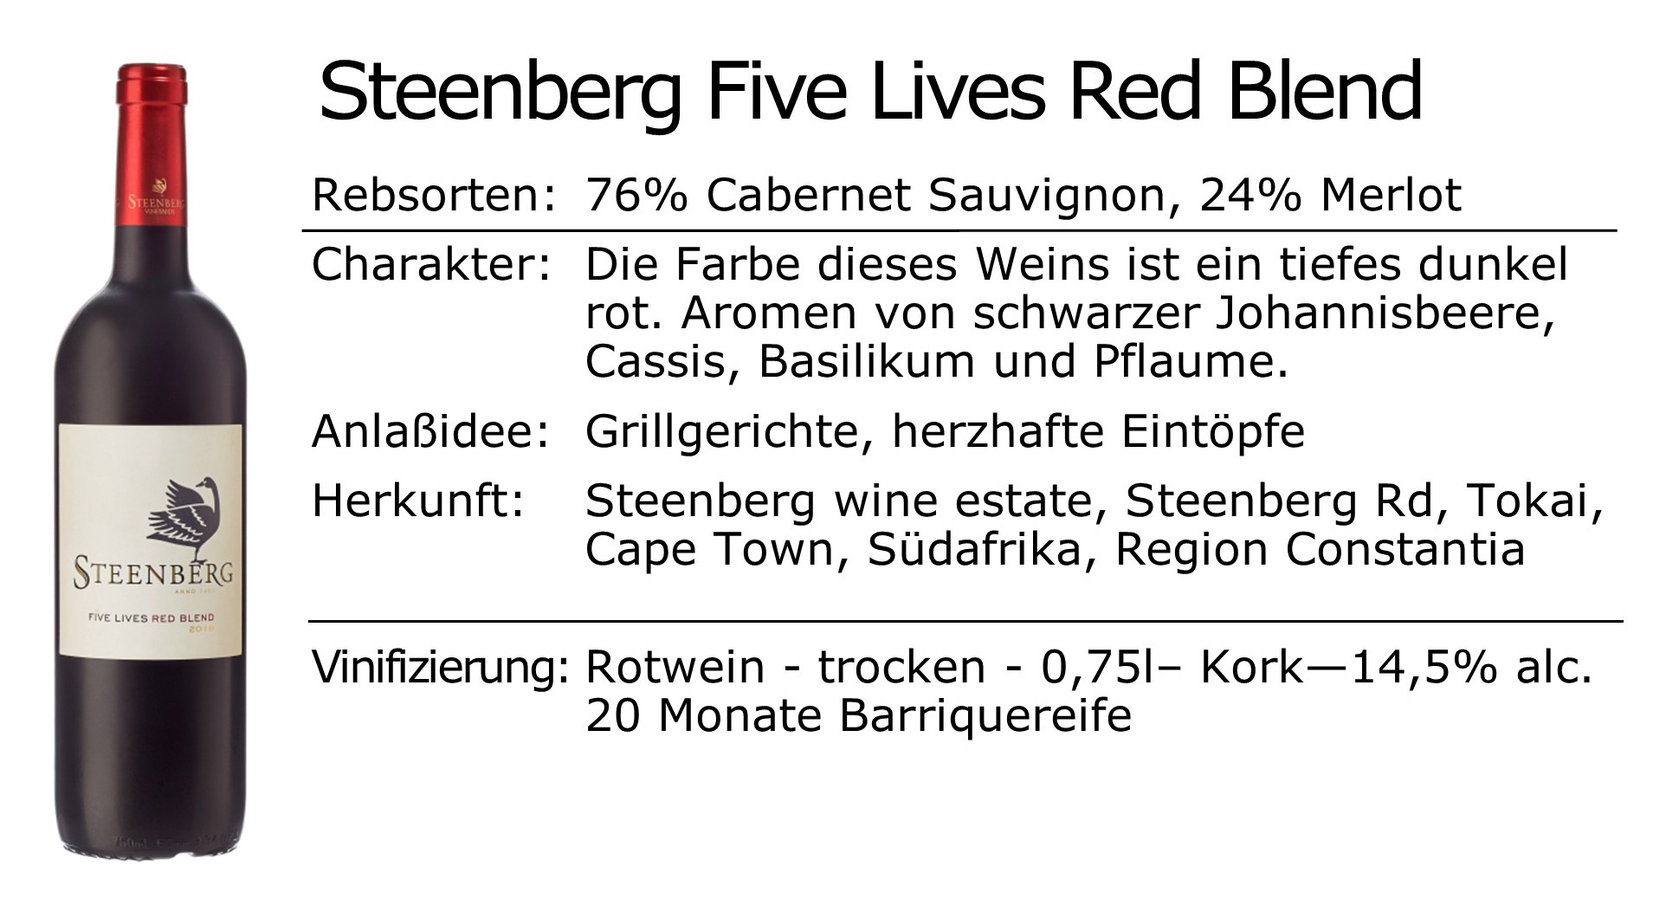 Steenberg Five Lives Red Blend 2019